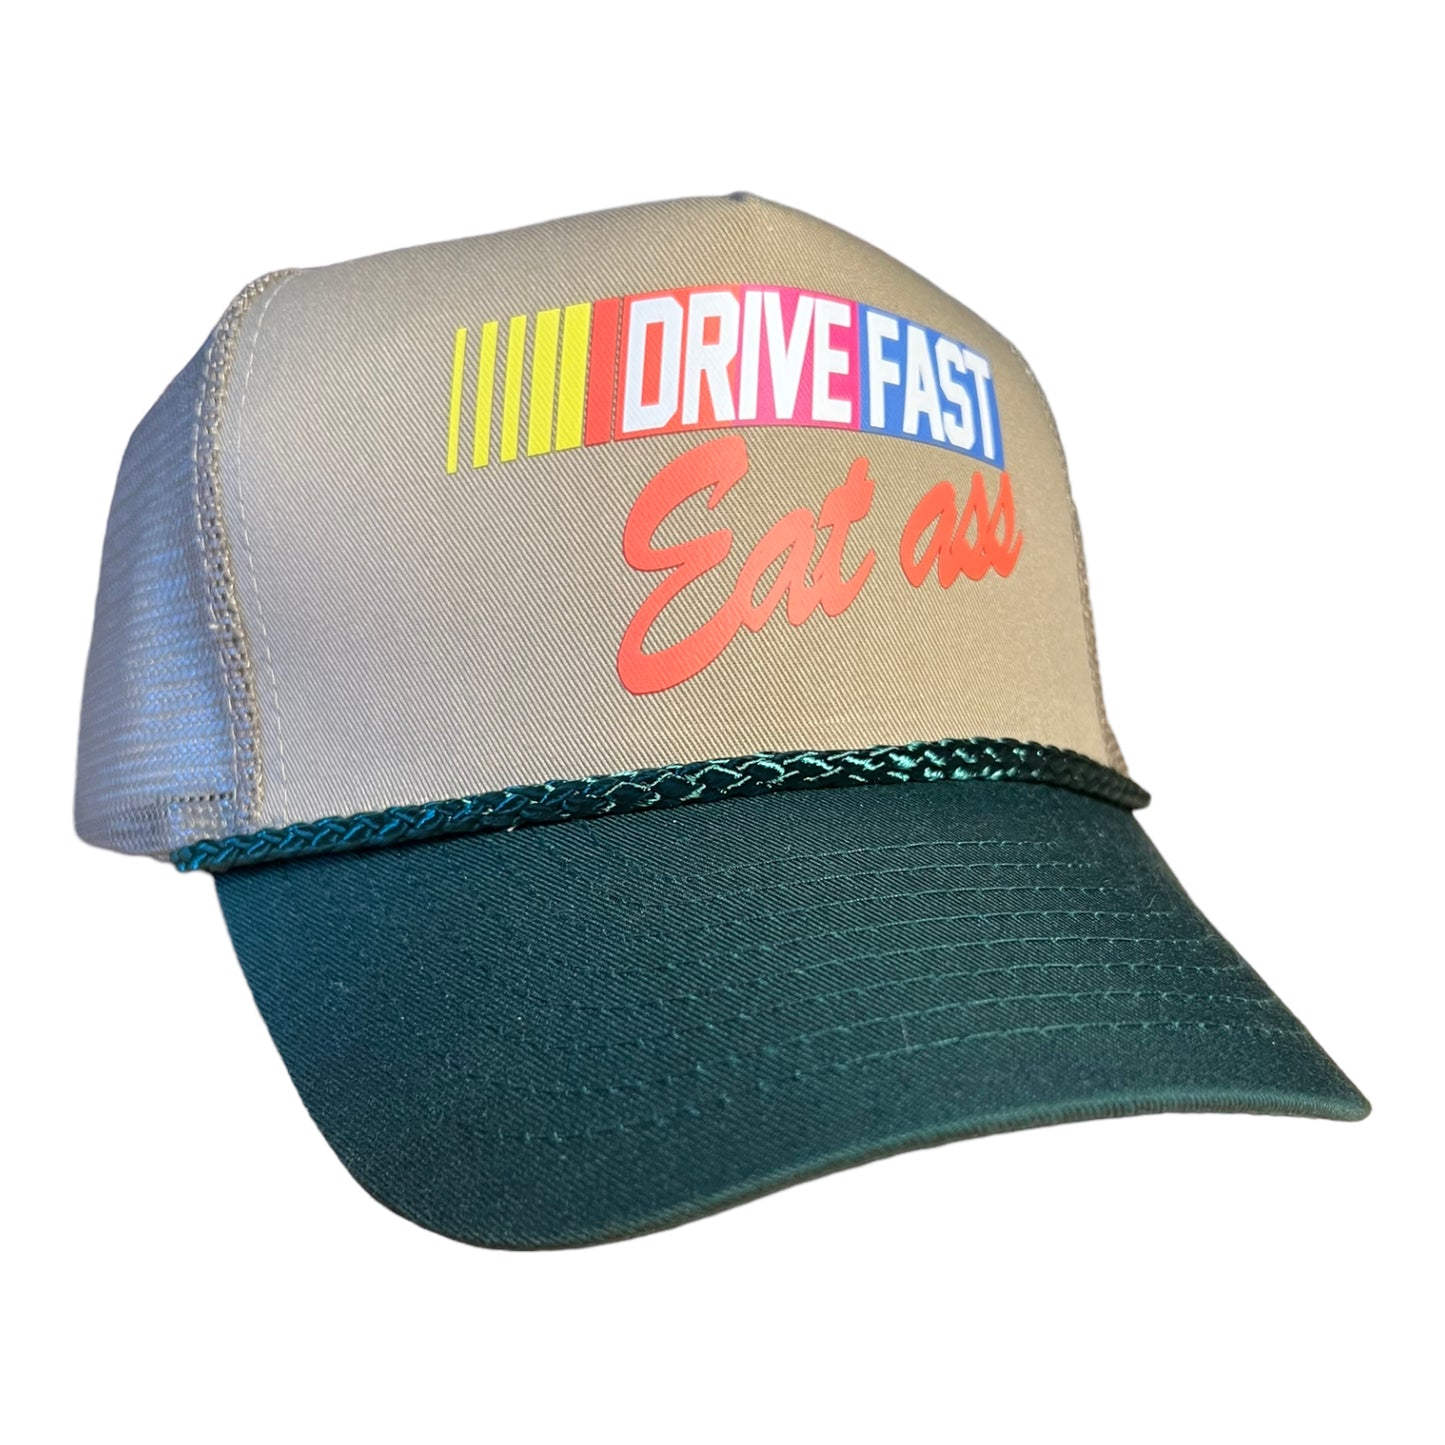 Drive Fast Eat Ass Trucker Hat Funny Trucker Hat Green/Beige